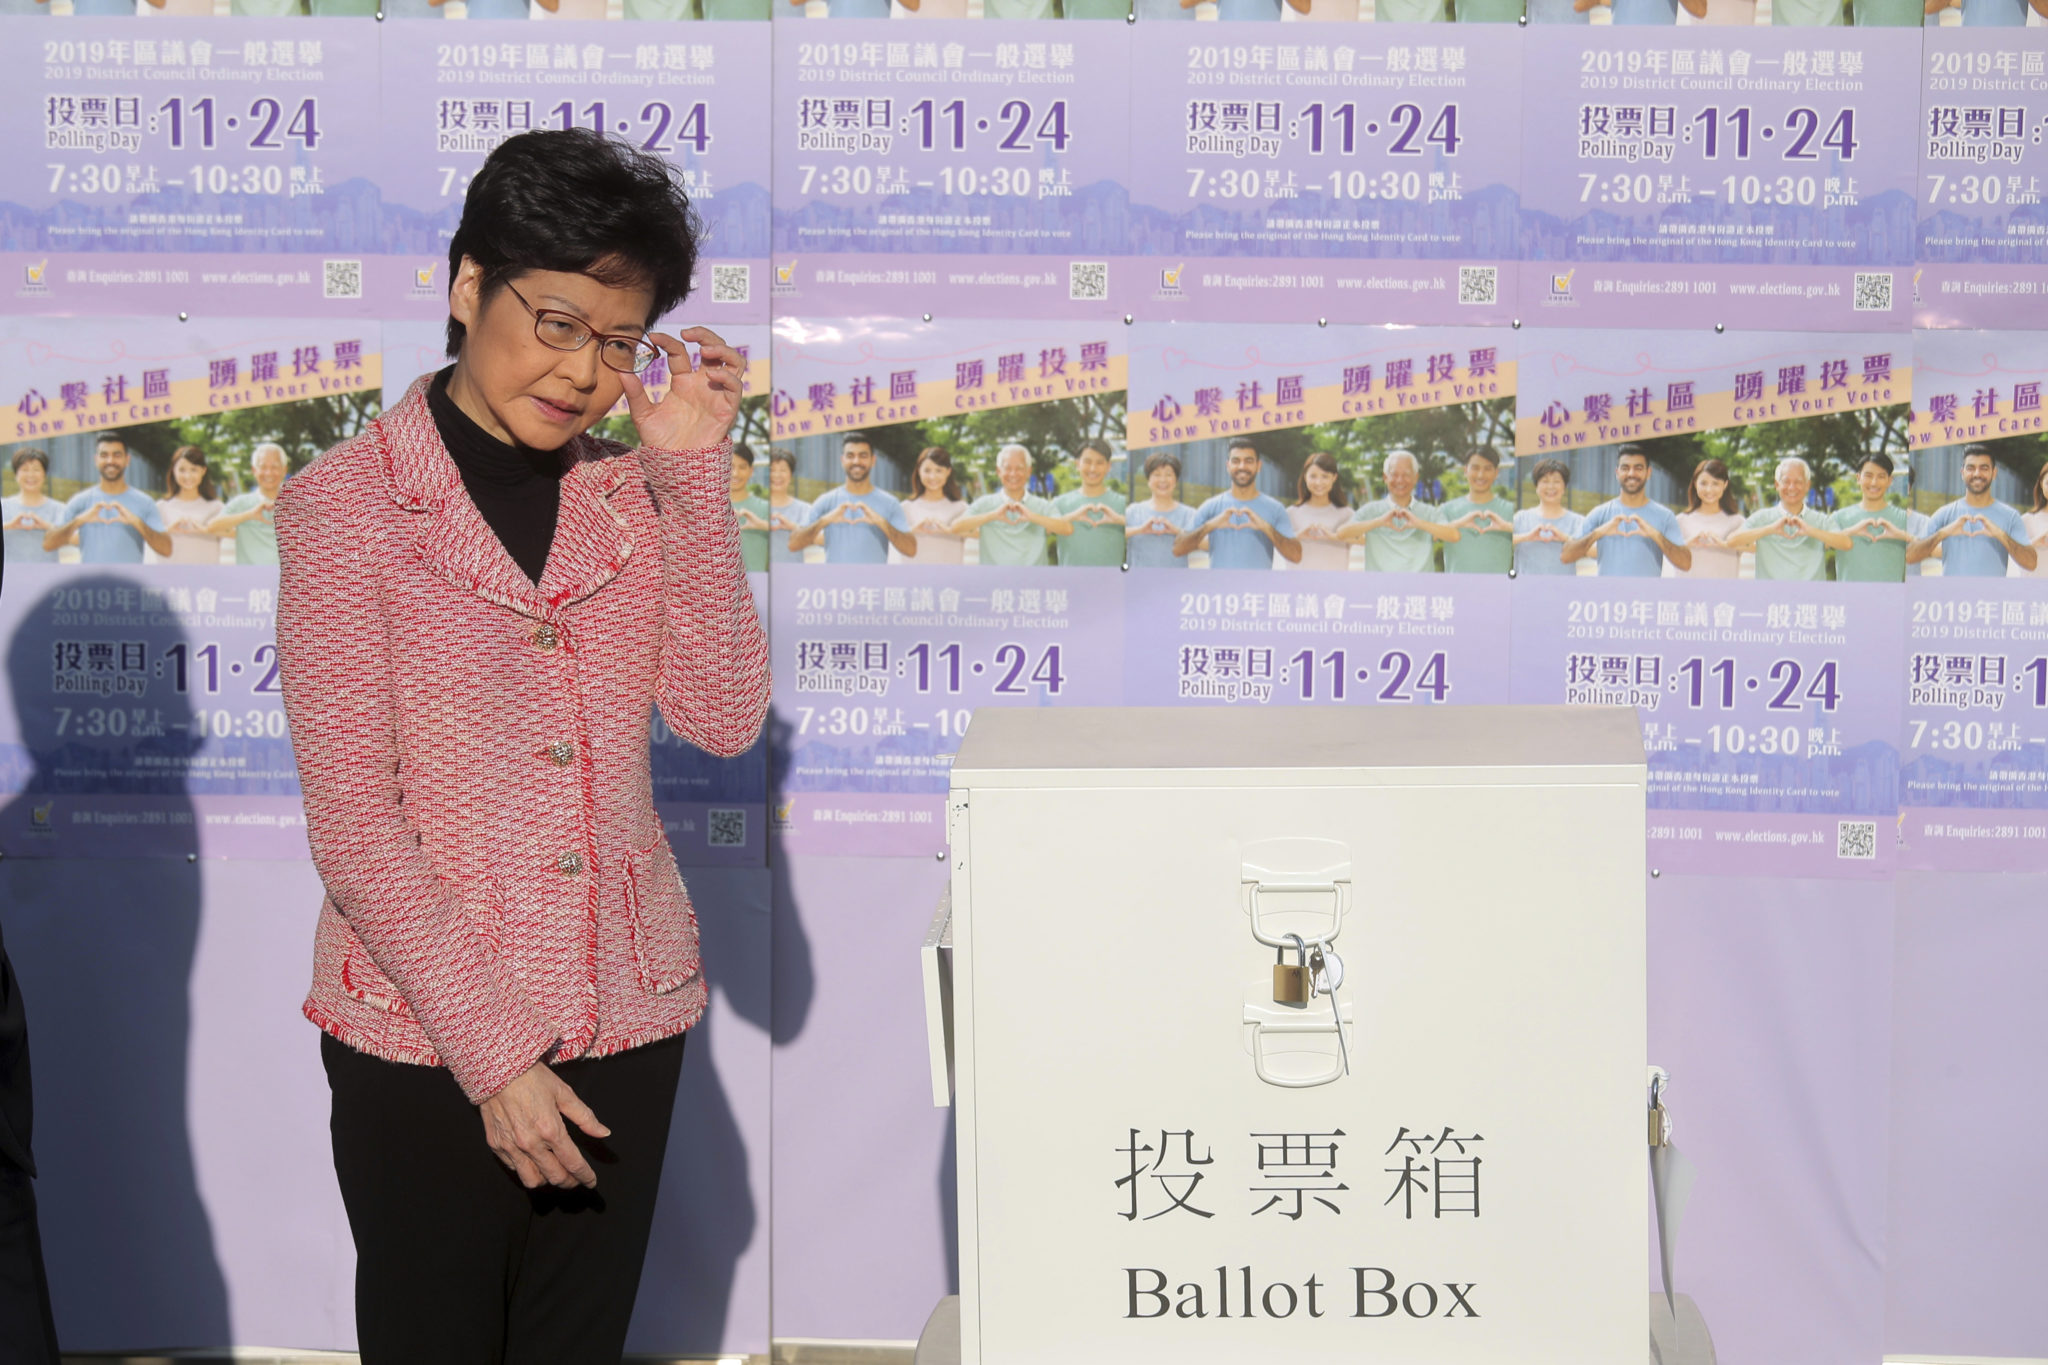 Hong Kong Election